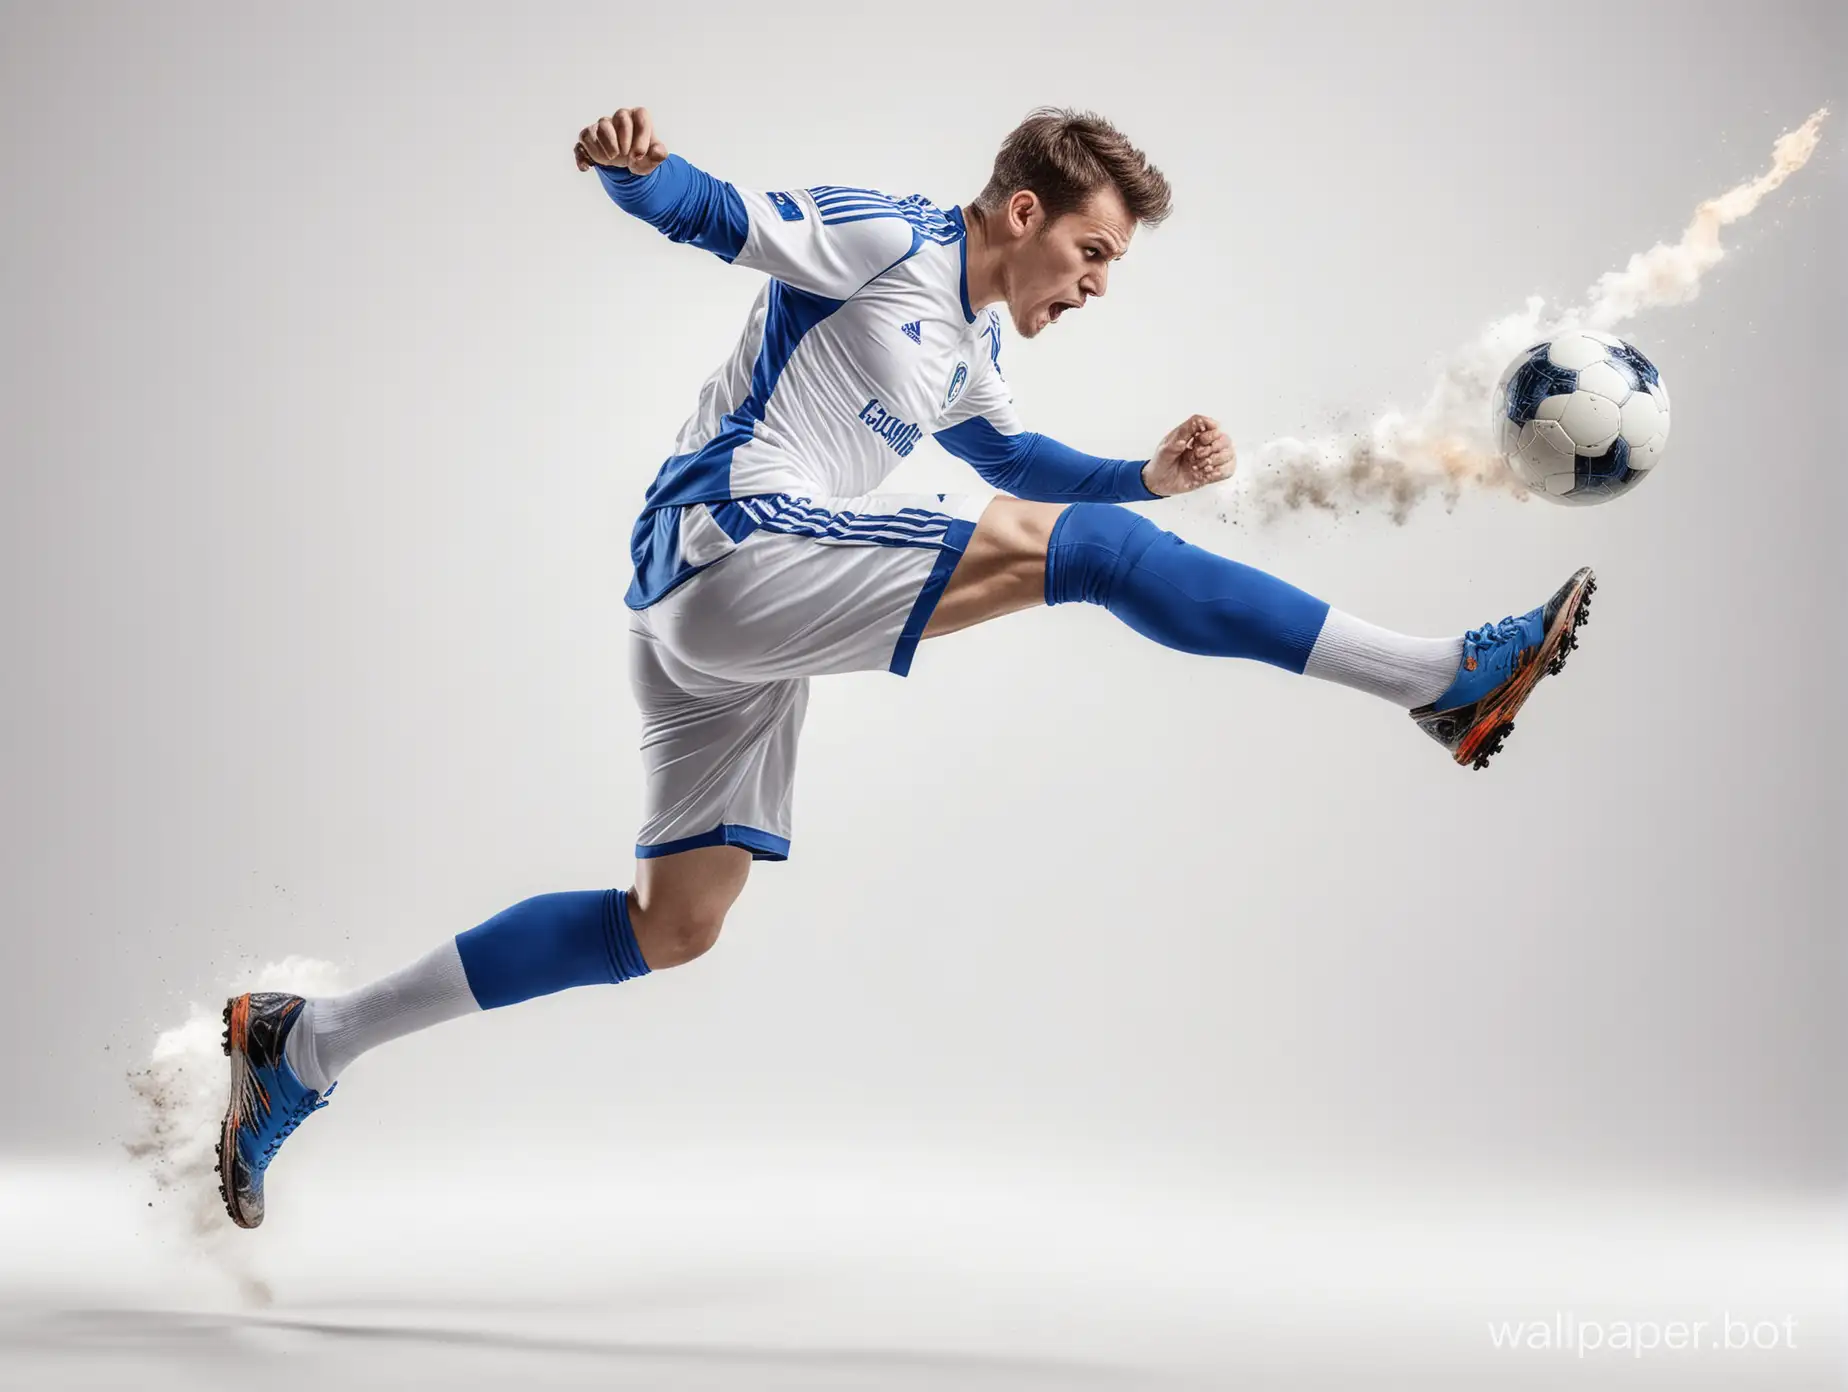 Соккер . игрок в бело синий форме  резко ускоряется и в прыжке наносит мощнейший удар  огонь вокруг мяча в полный рост высокая детализация фото UHDR белый фон 